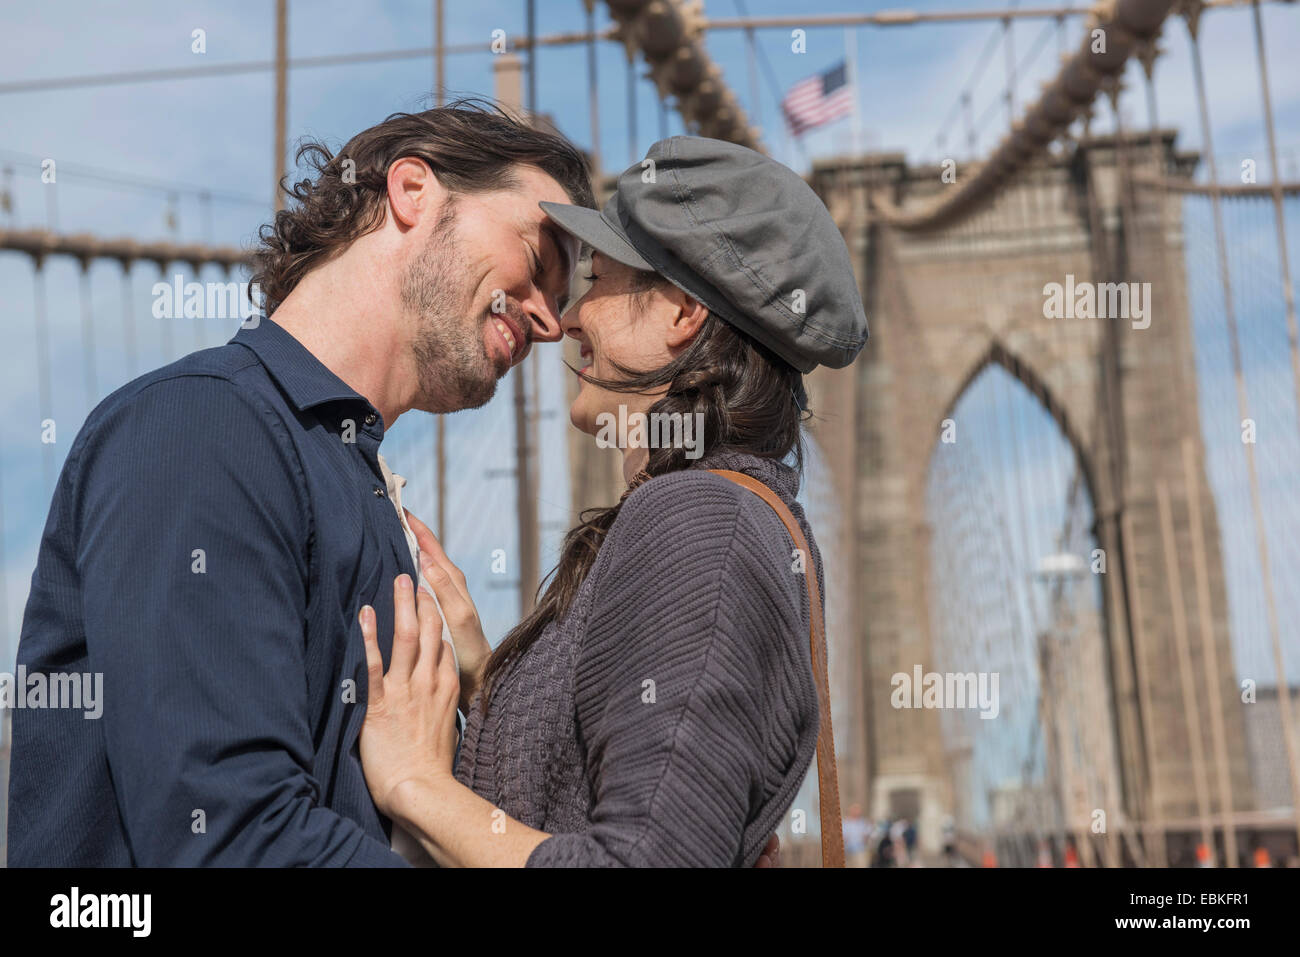 USA, l'État de New York, New York City, Brooklyn, heureux couple kissing on Brooklyn Bridge Banque D'Images